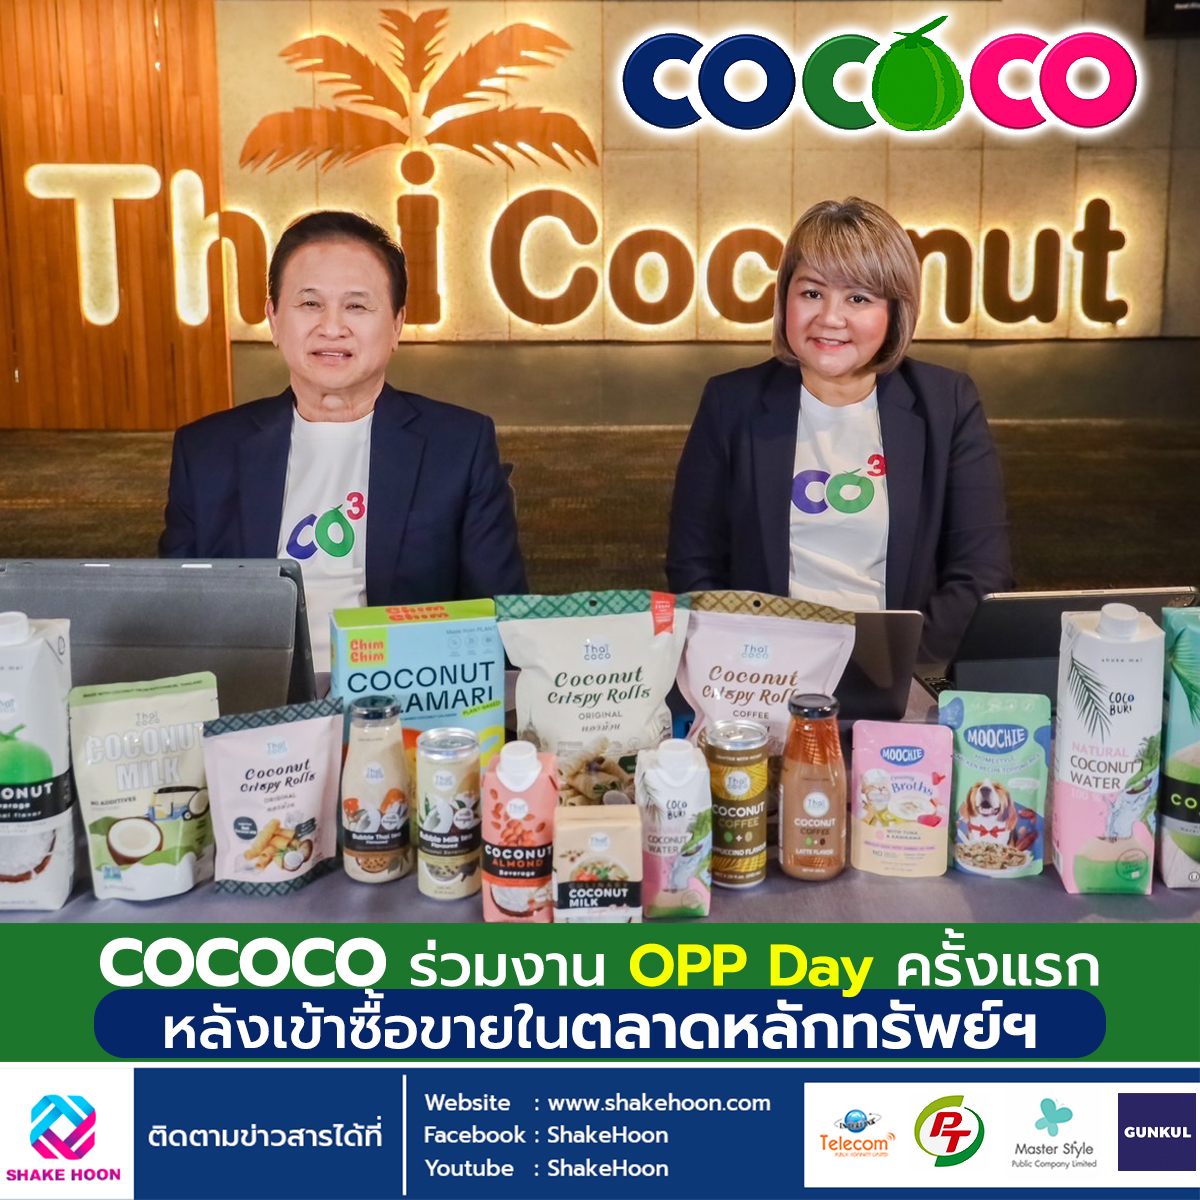 COCOCO ร่วมงาน OPP Day ครั้งแรกหลังเข้าซื้อขายในตลาดหลักทรัพย์ฯ